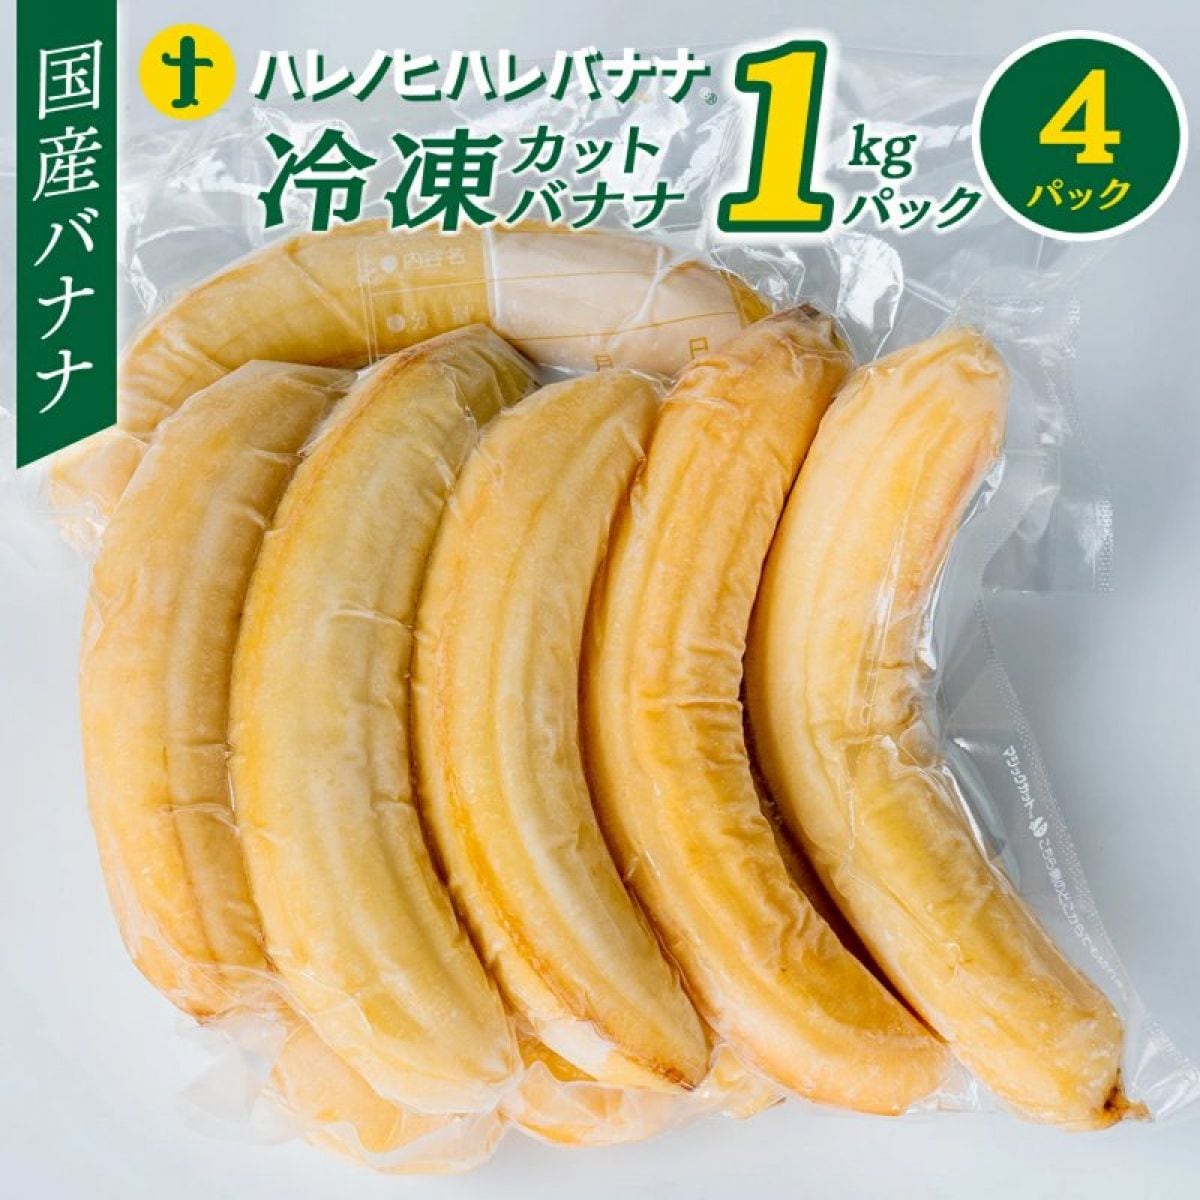 ハレノヒハレバナナ冷凍カットバナナ 1Kg✕4個パック　4kg